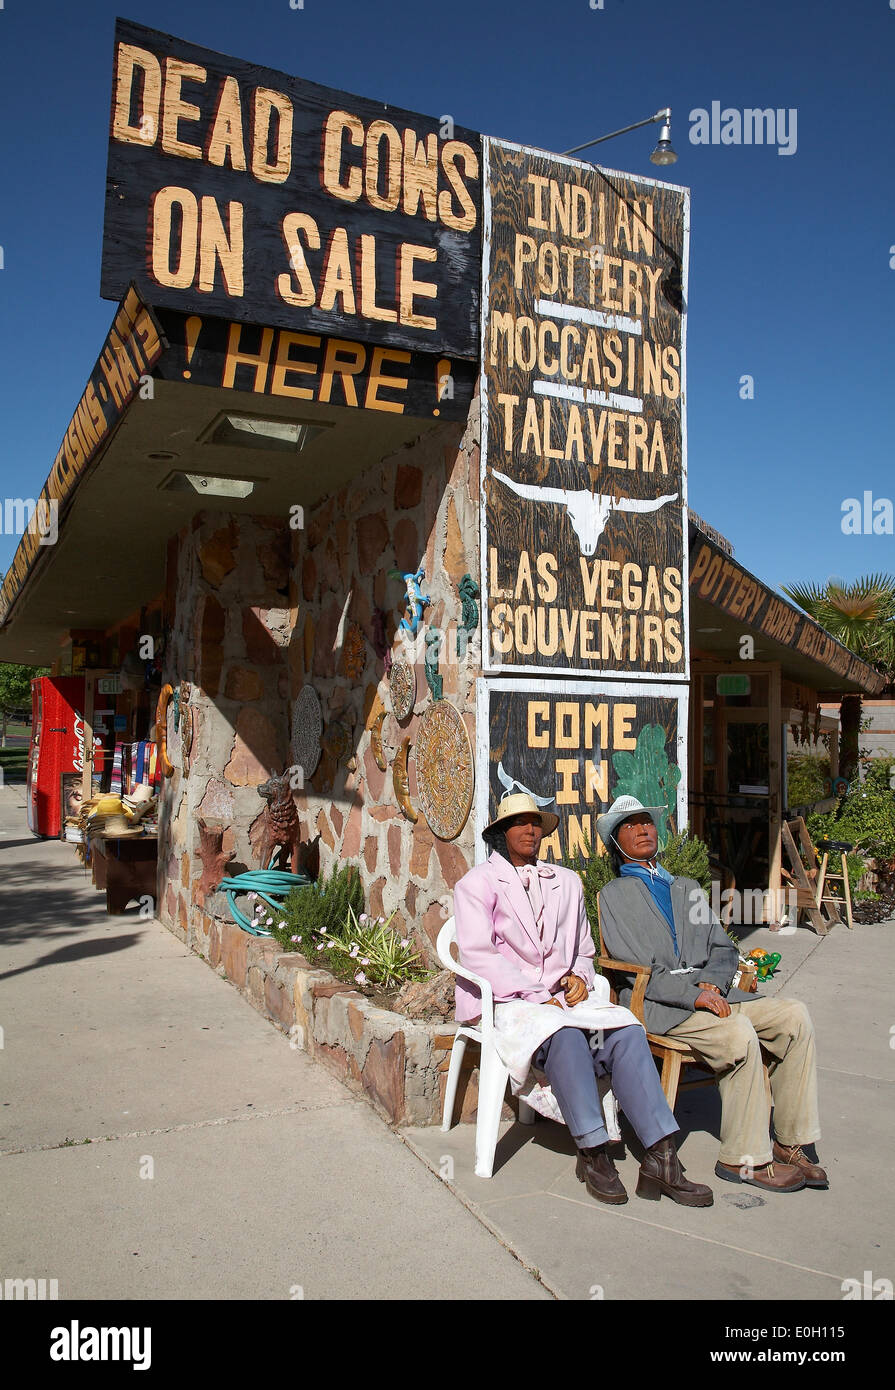 Western Mexican center, a Souvenir shop in historical Boulder city, Nevada, USA Stock Photo